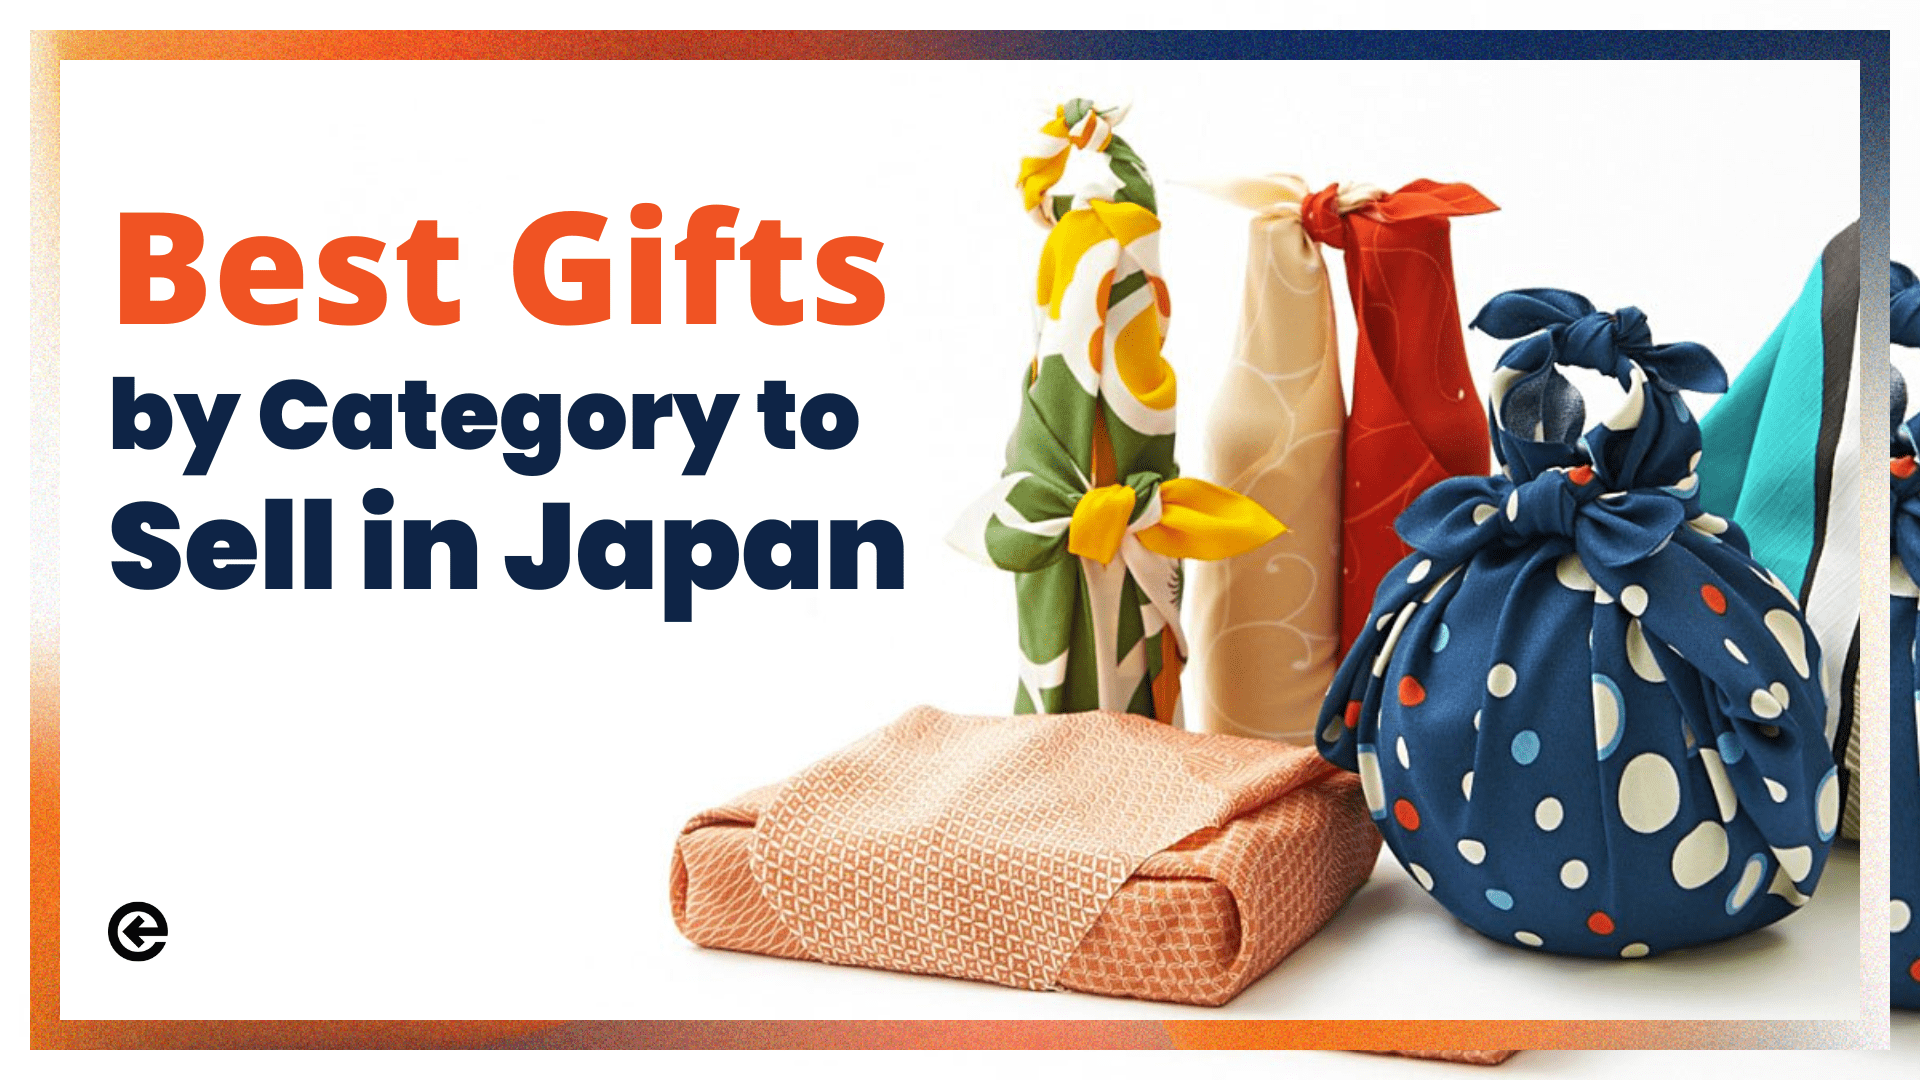 Los mejores regalos por categoría para vender en Japón